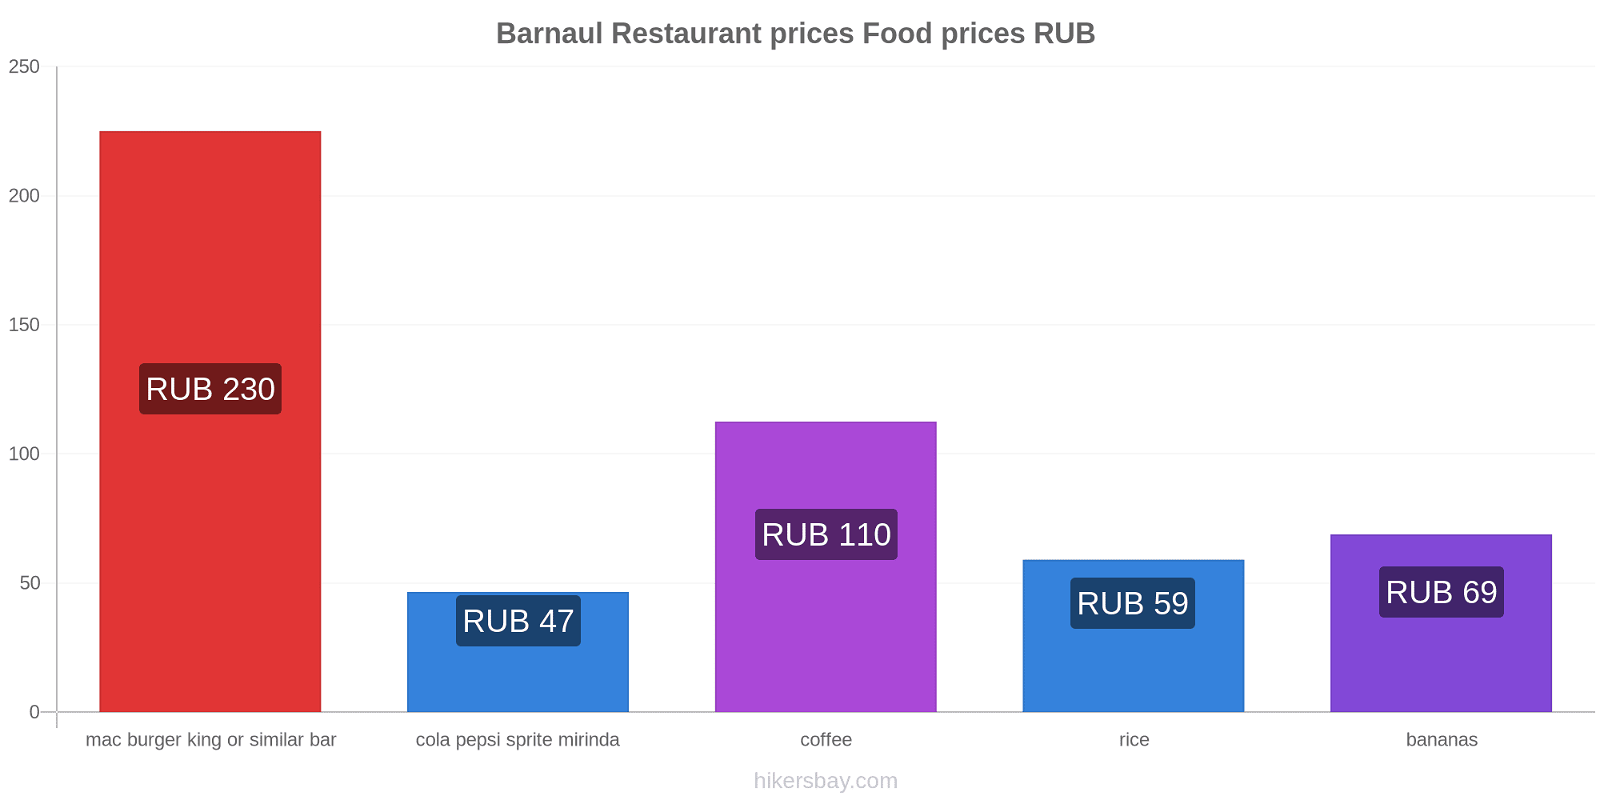 Barnaul price changes hikersbay.com